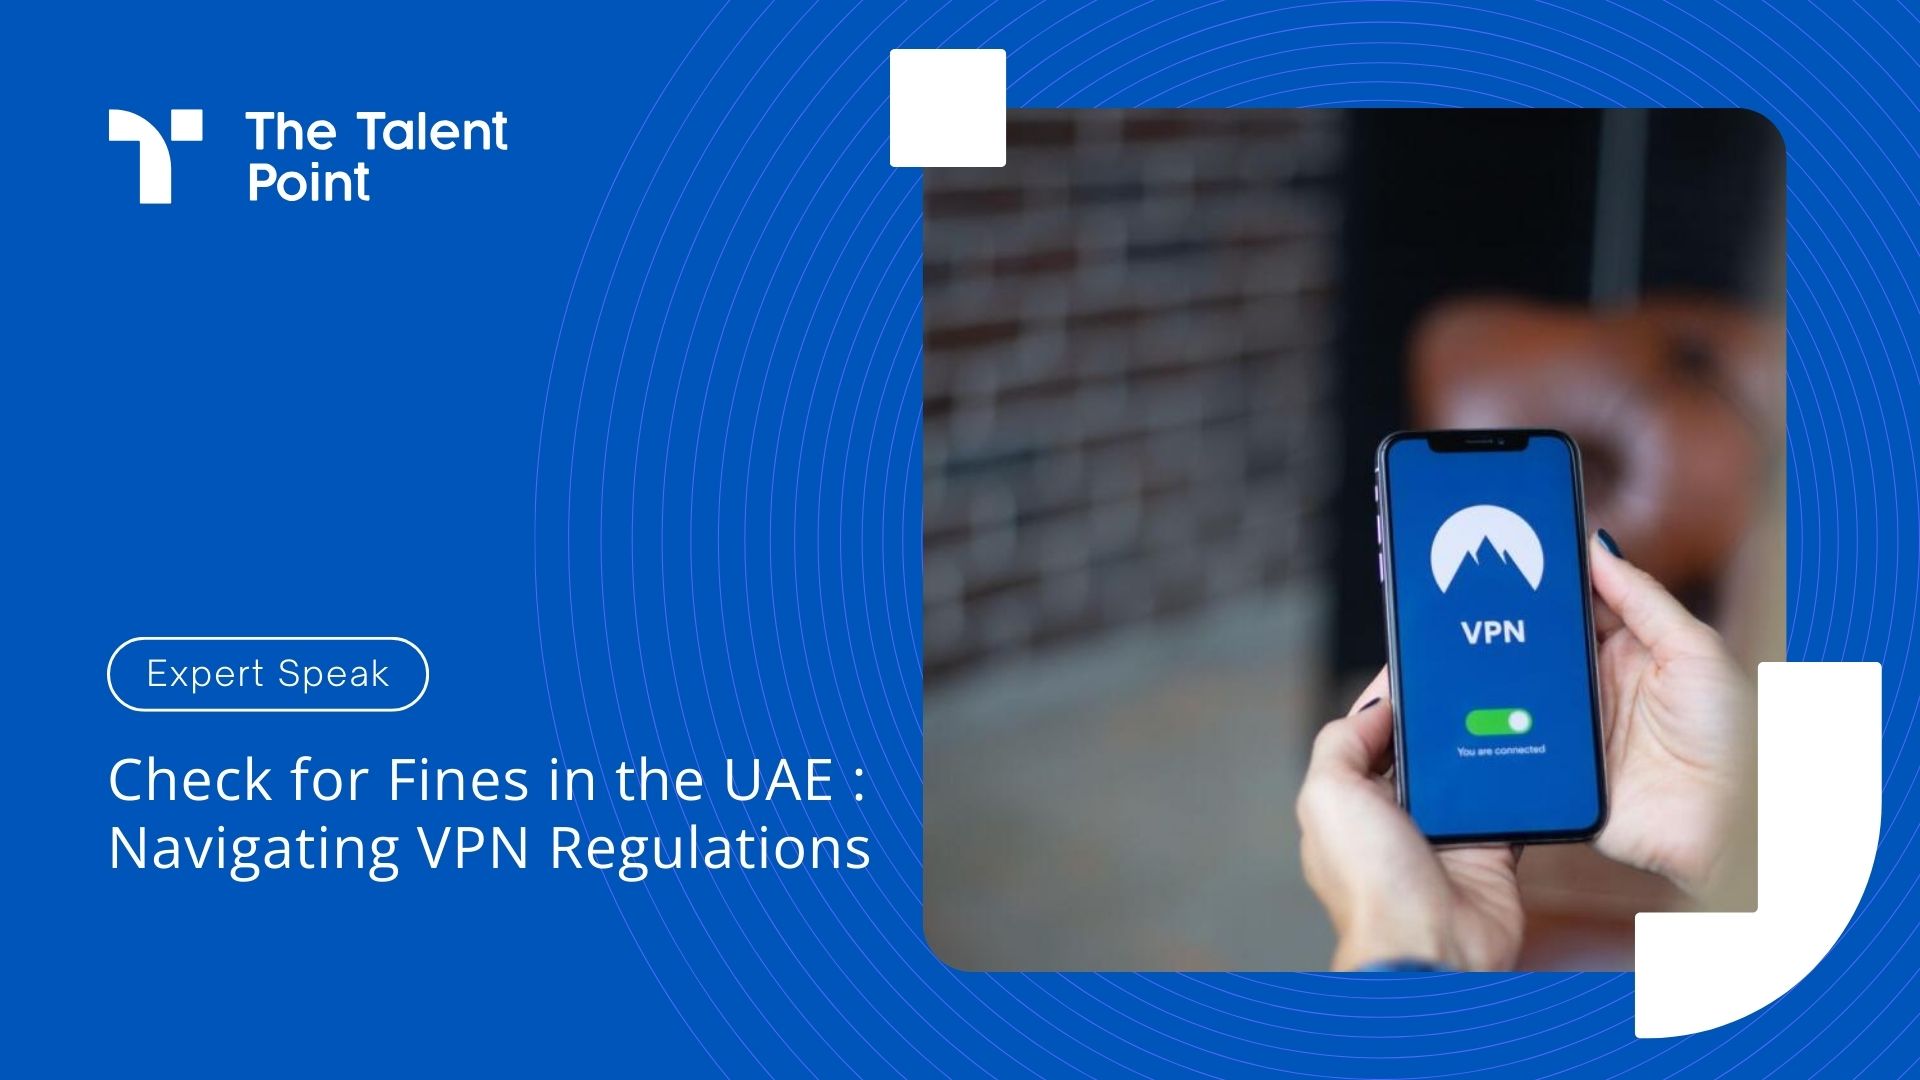 Check for VPN Fines in the UAE : Navigating VPN Regulations